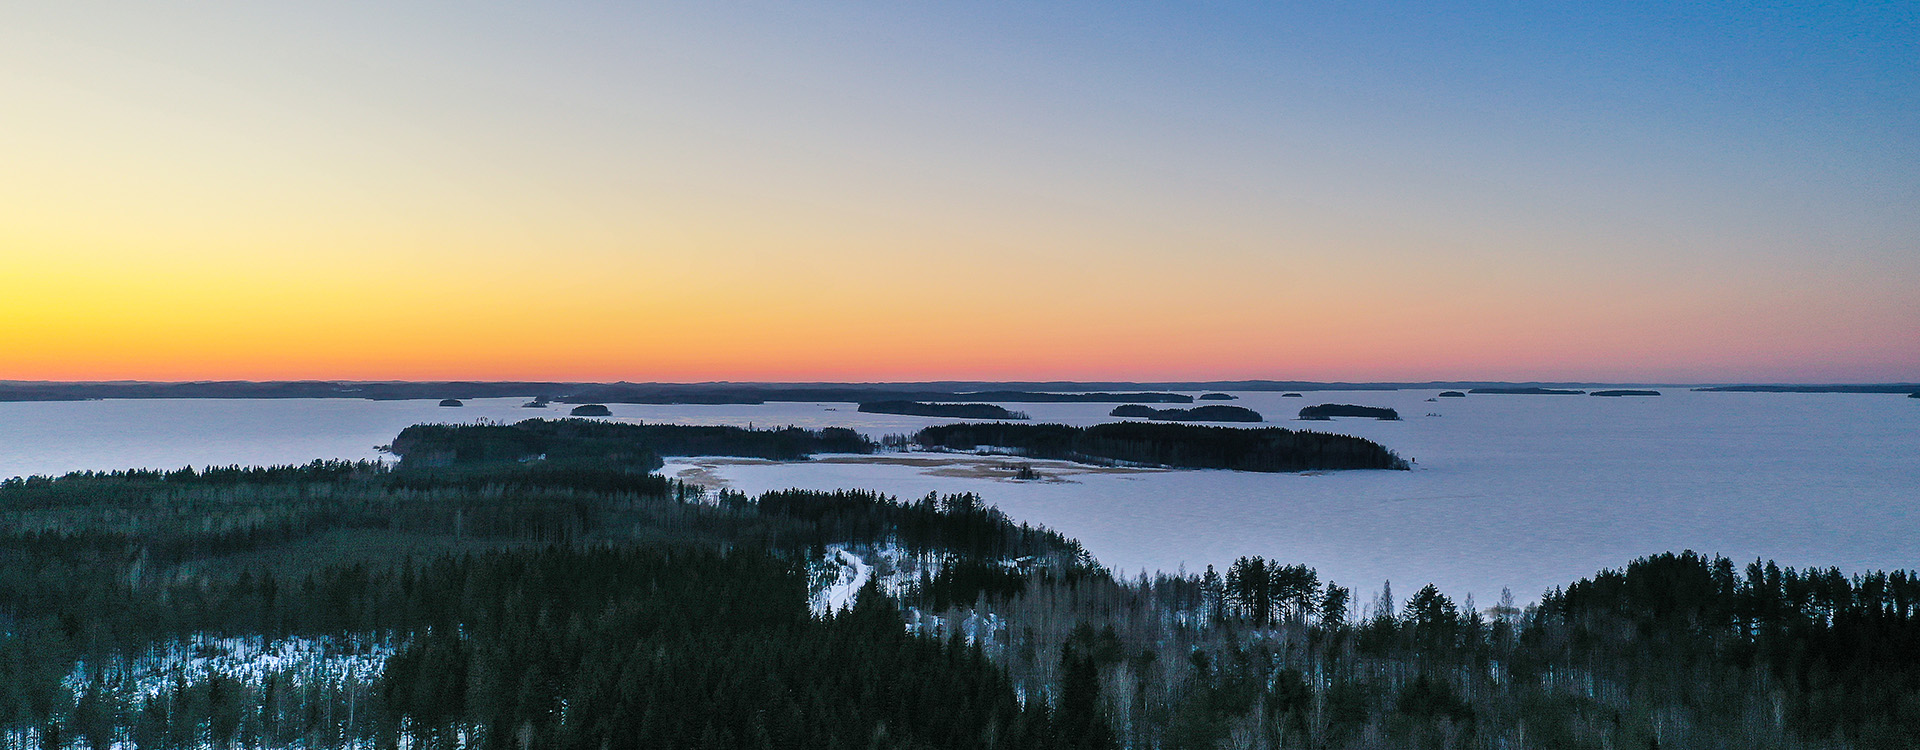 Talvinen järvimaisema dronella kuvattuna, auringon lasku taustalla, punertava taivaanranta, saaria ja vesi jäässä